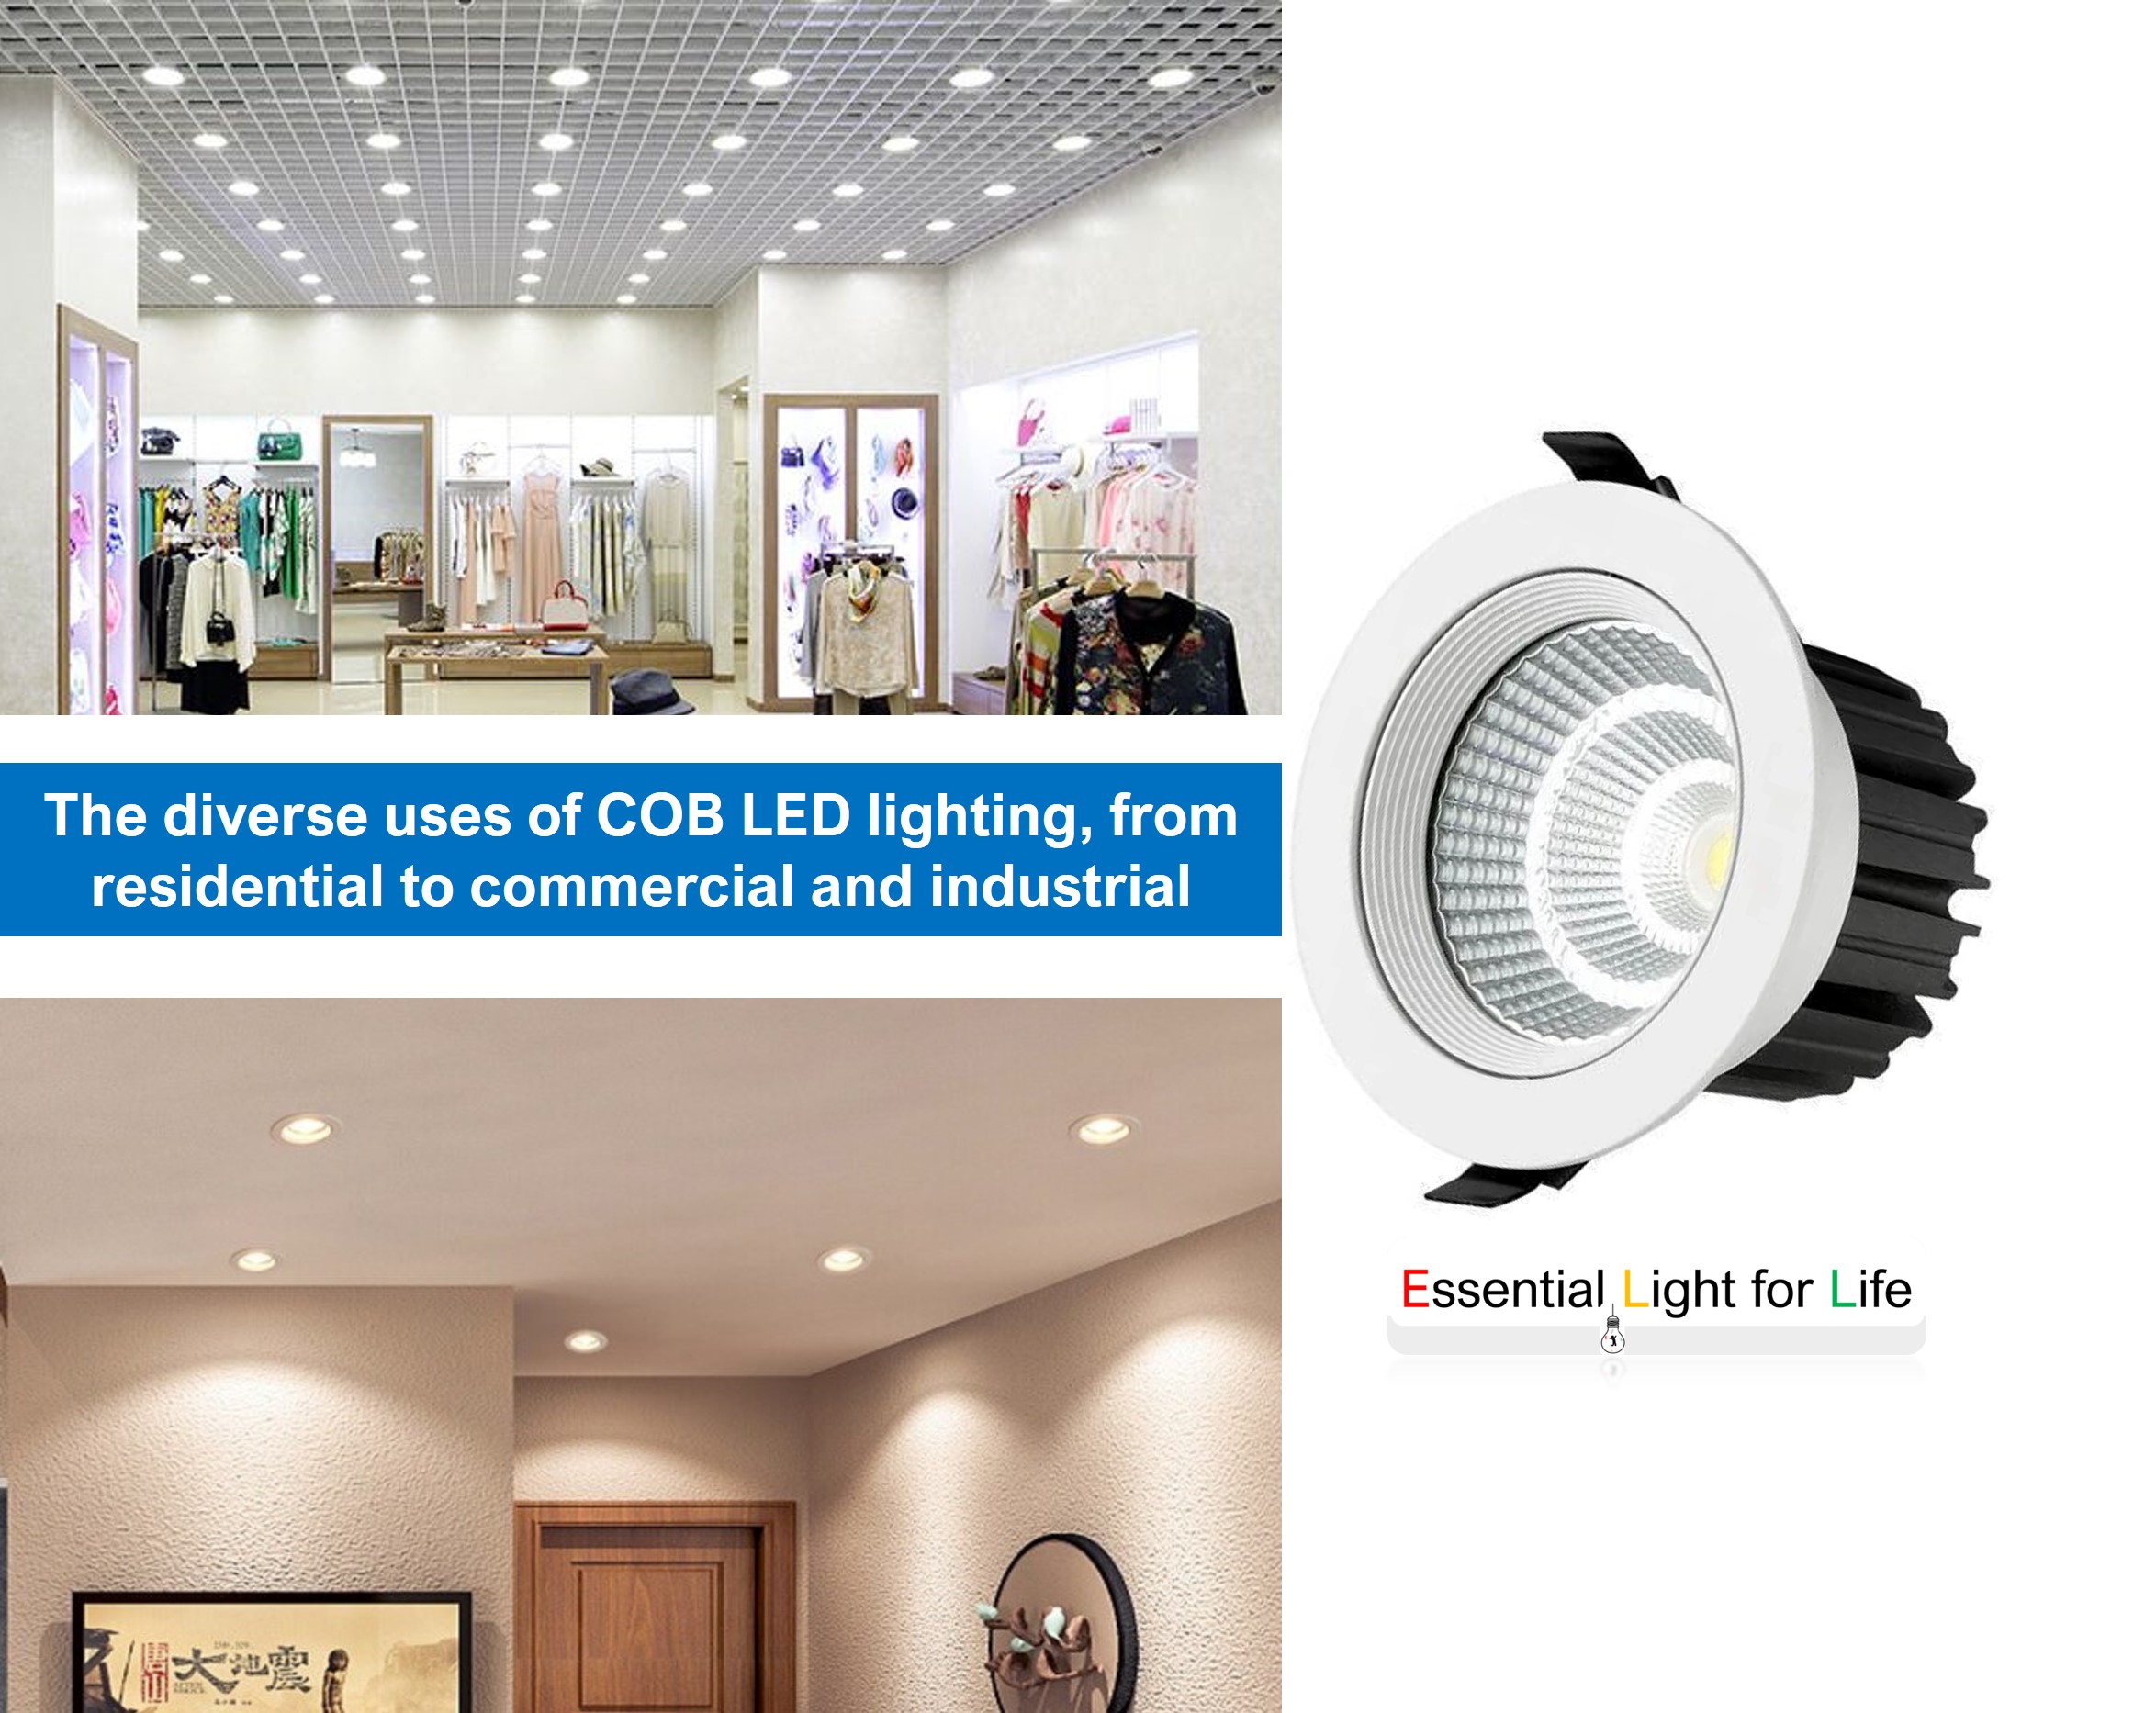 Applications of COB LED Lighting